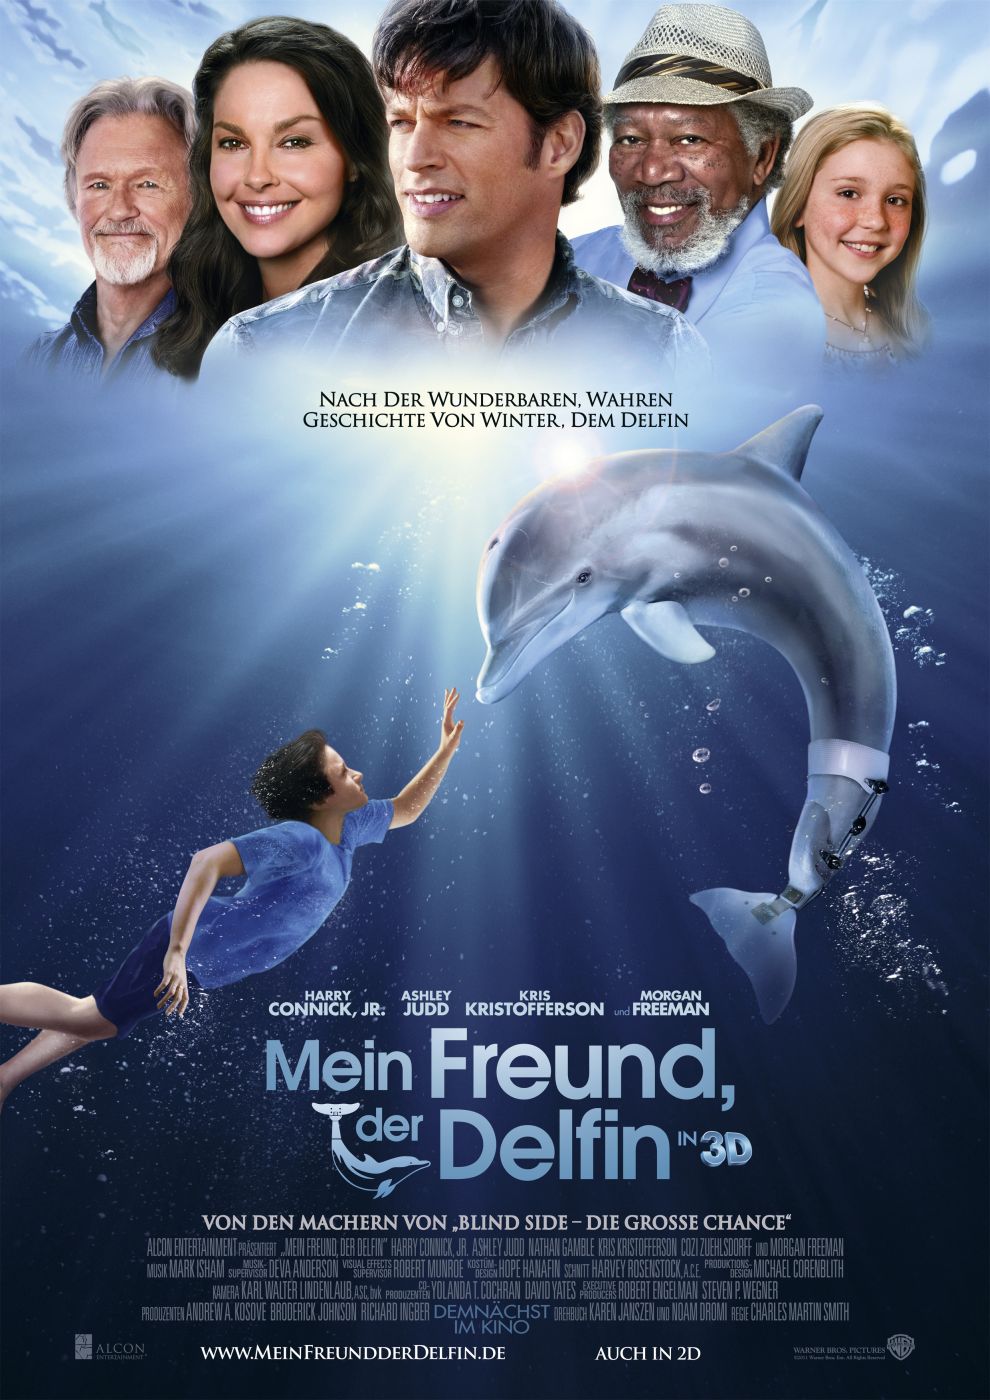 Delfin Film